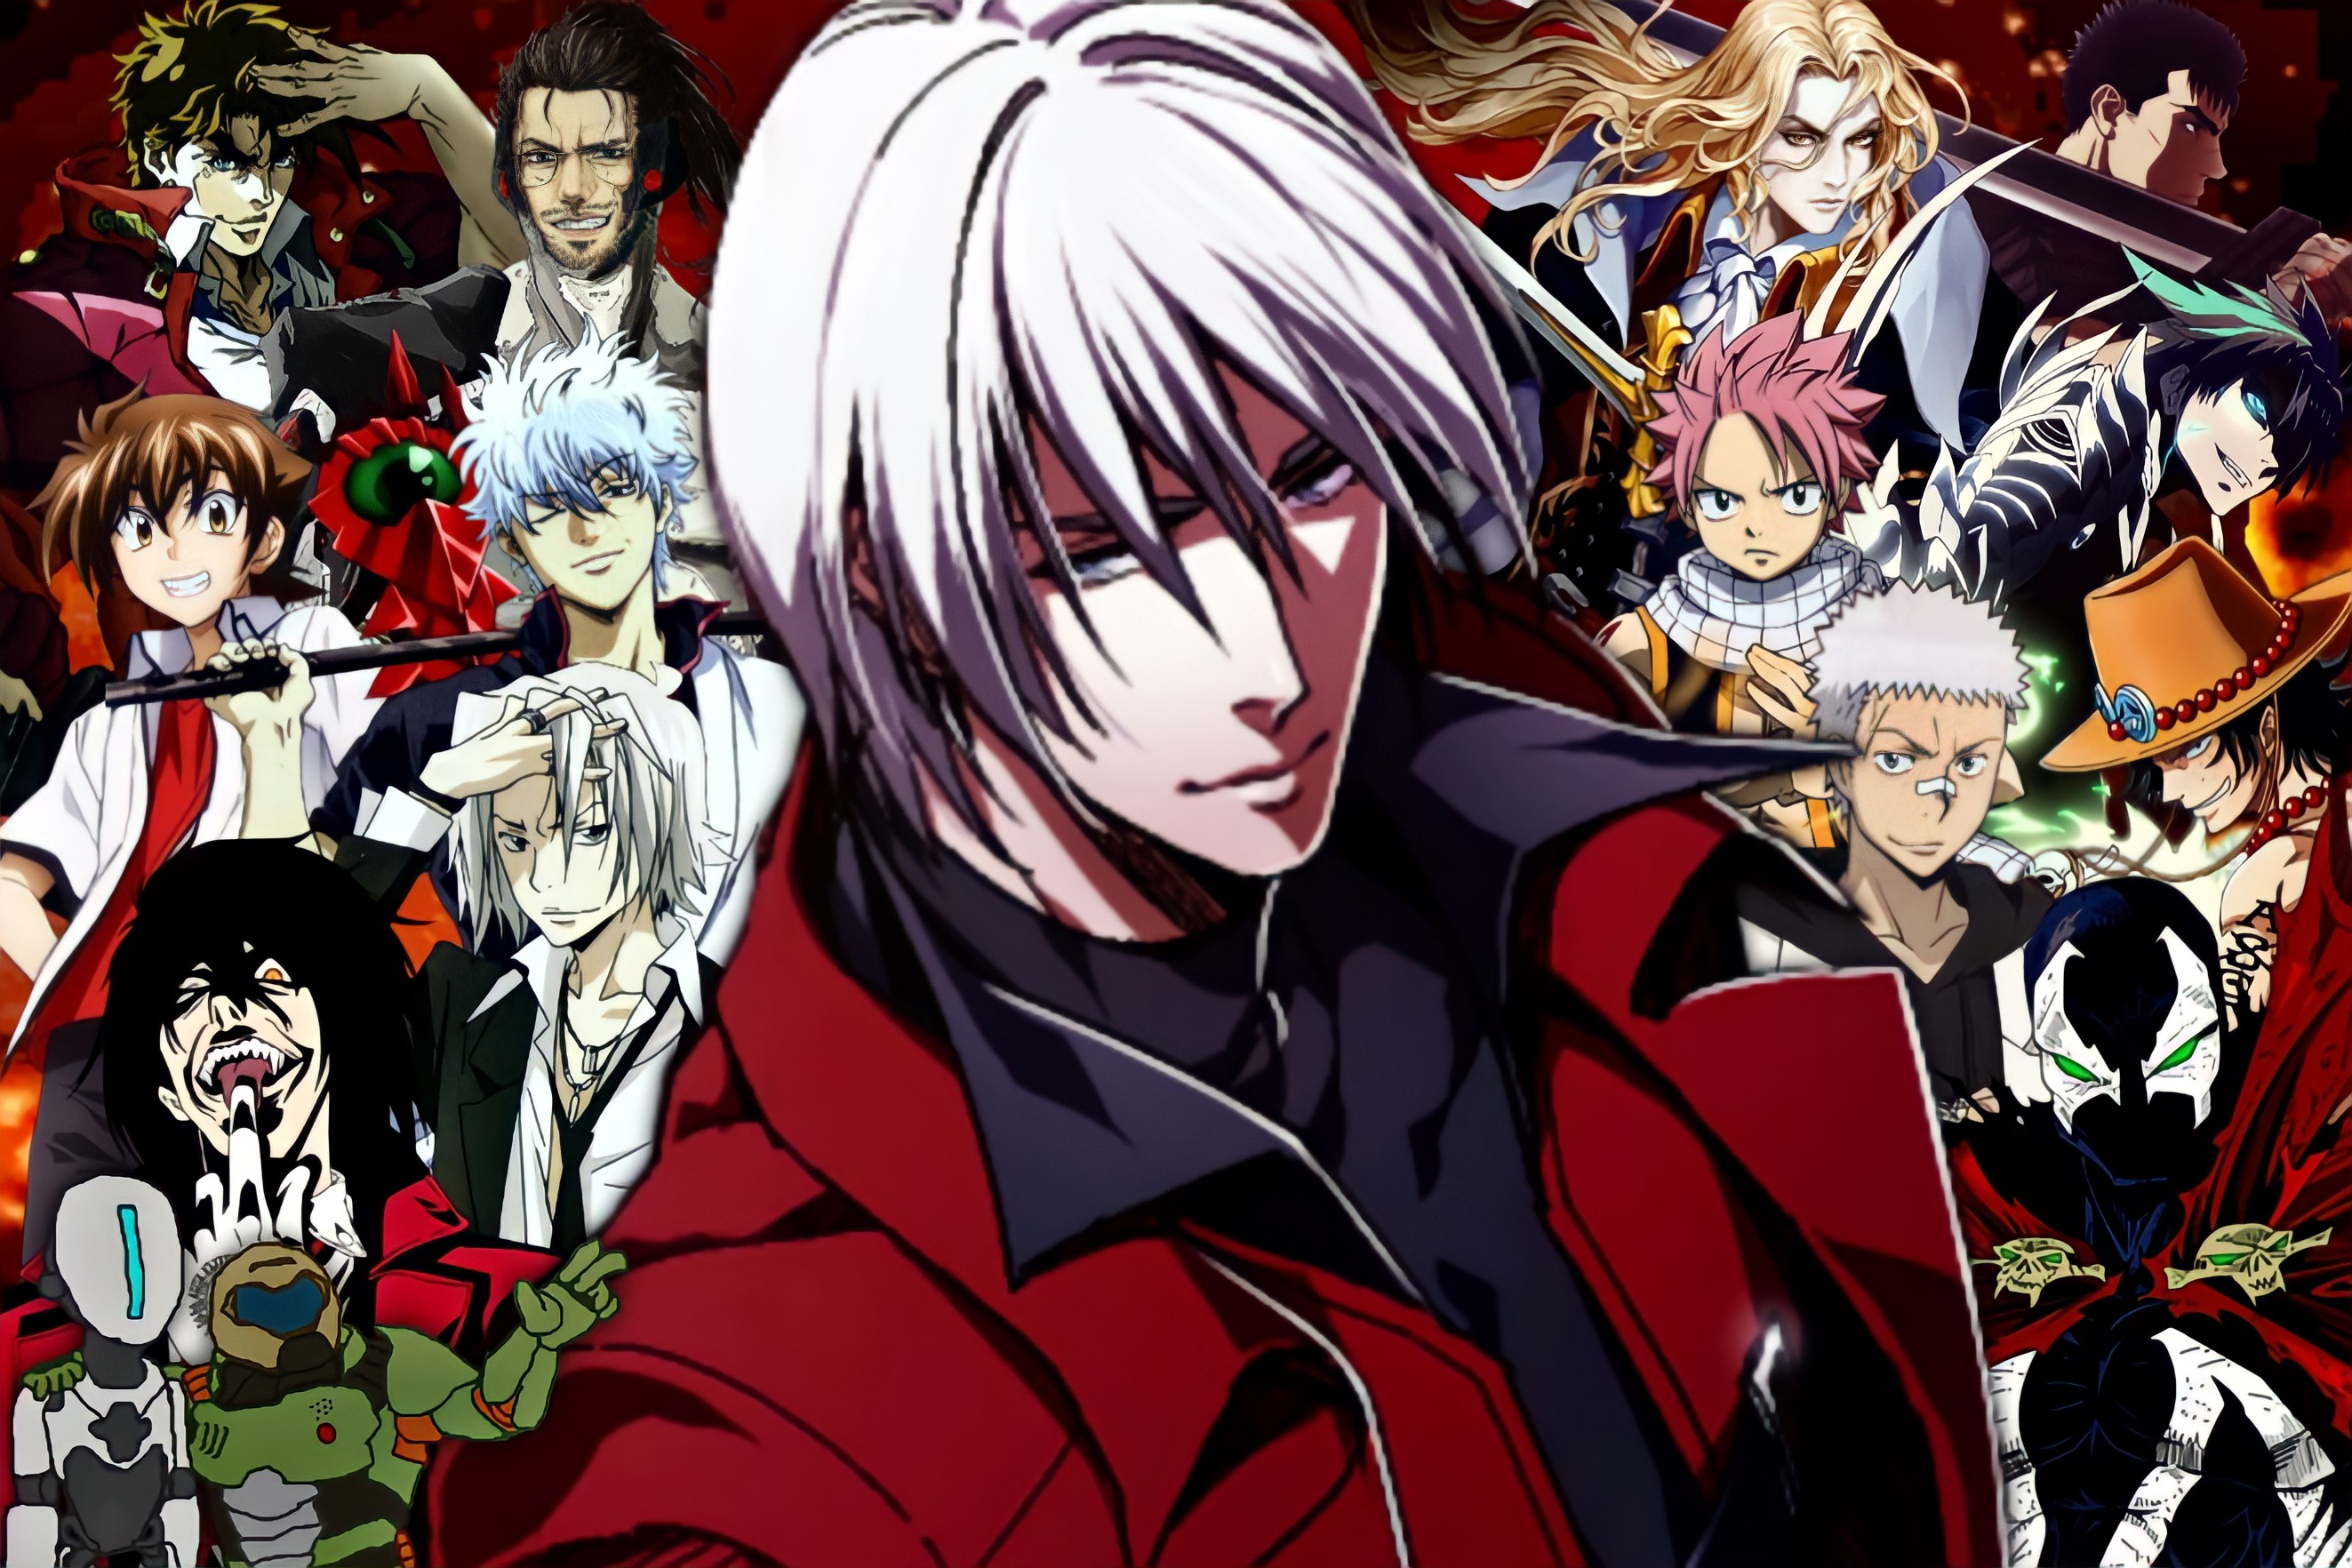 DMC4: Dante: the devil in me by MasamuneRevolution on DeviantArt